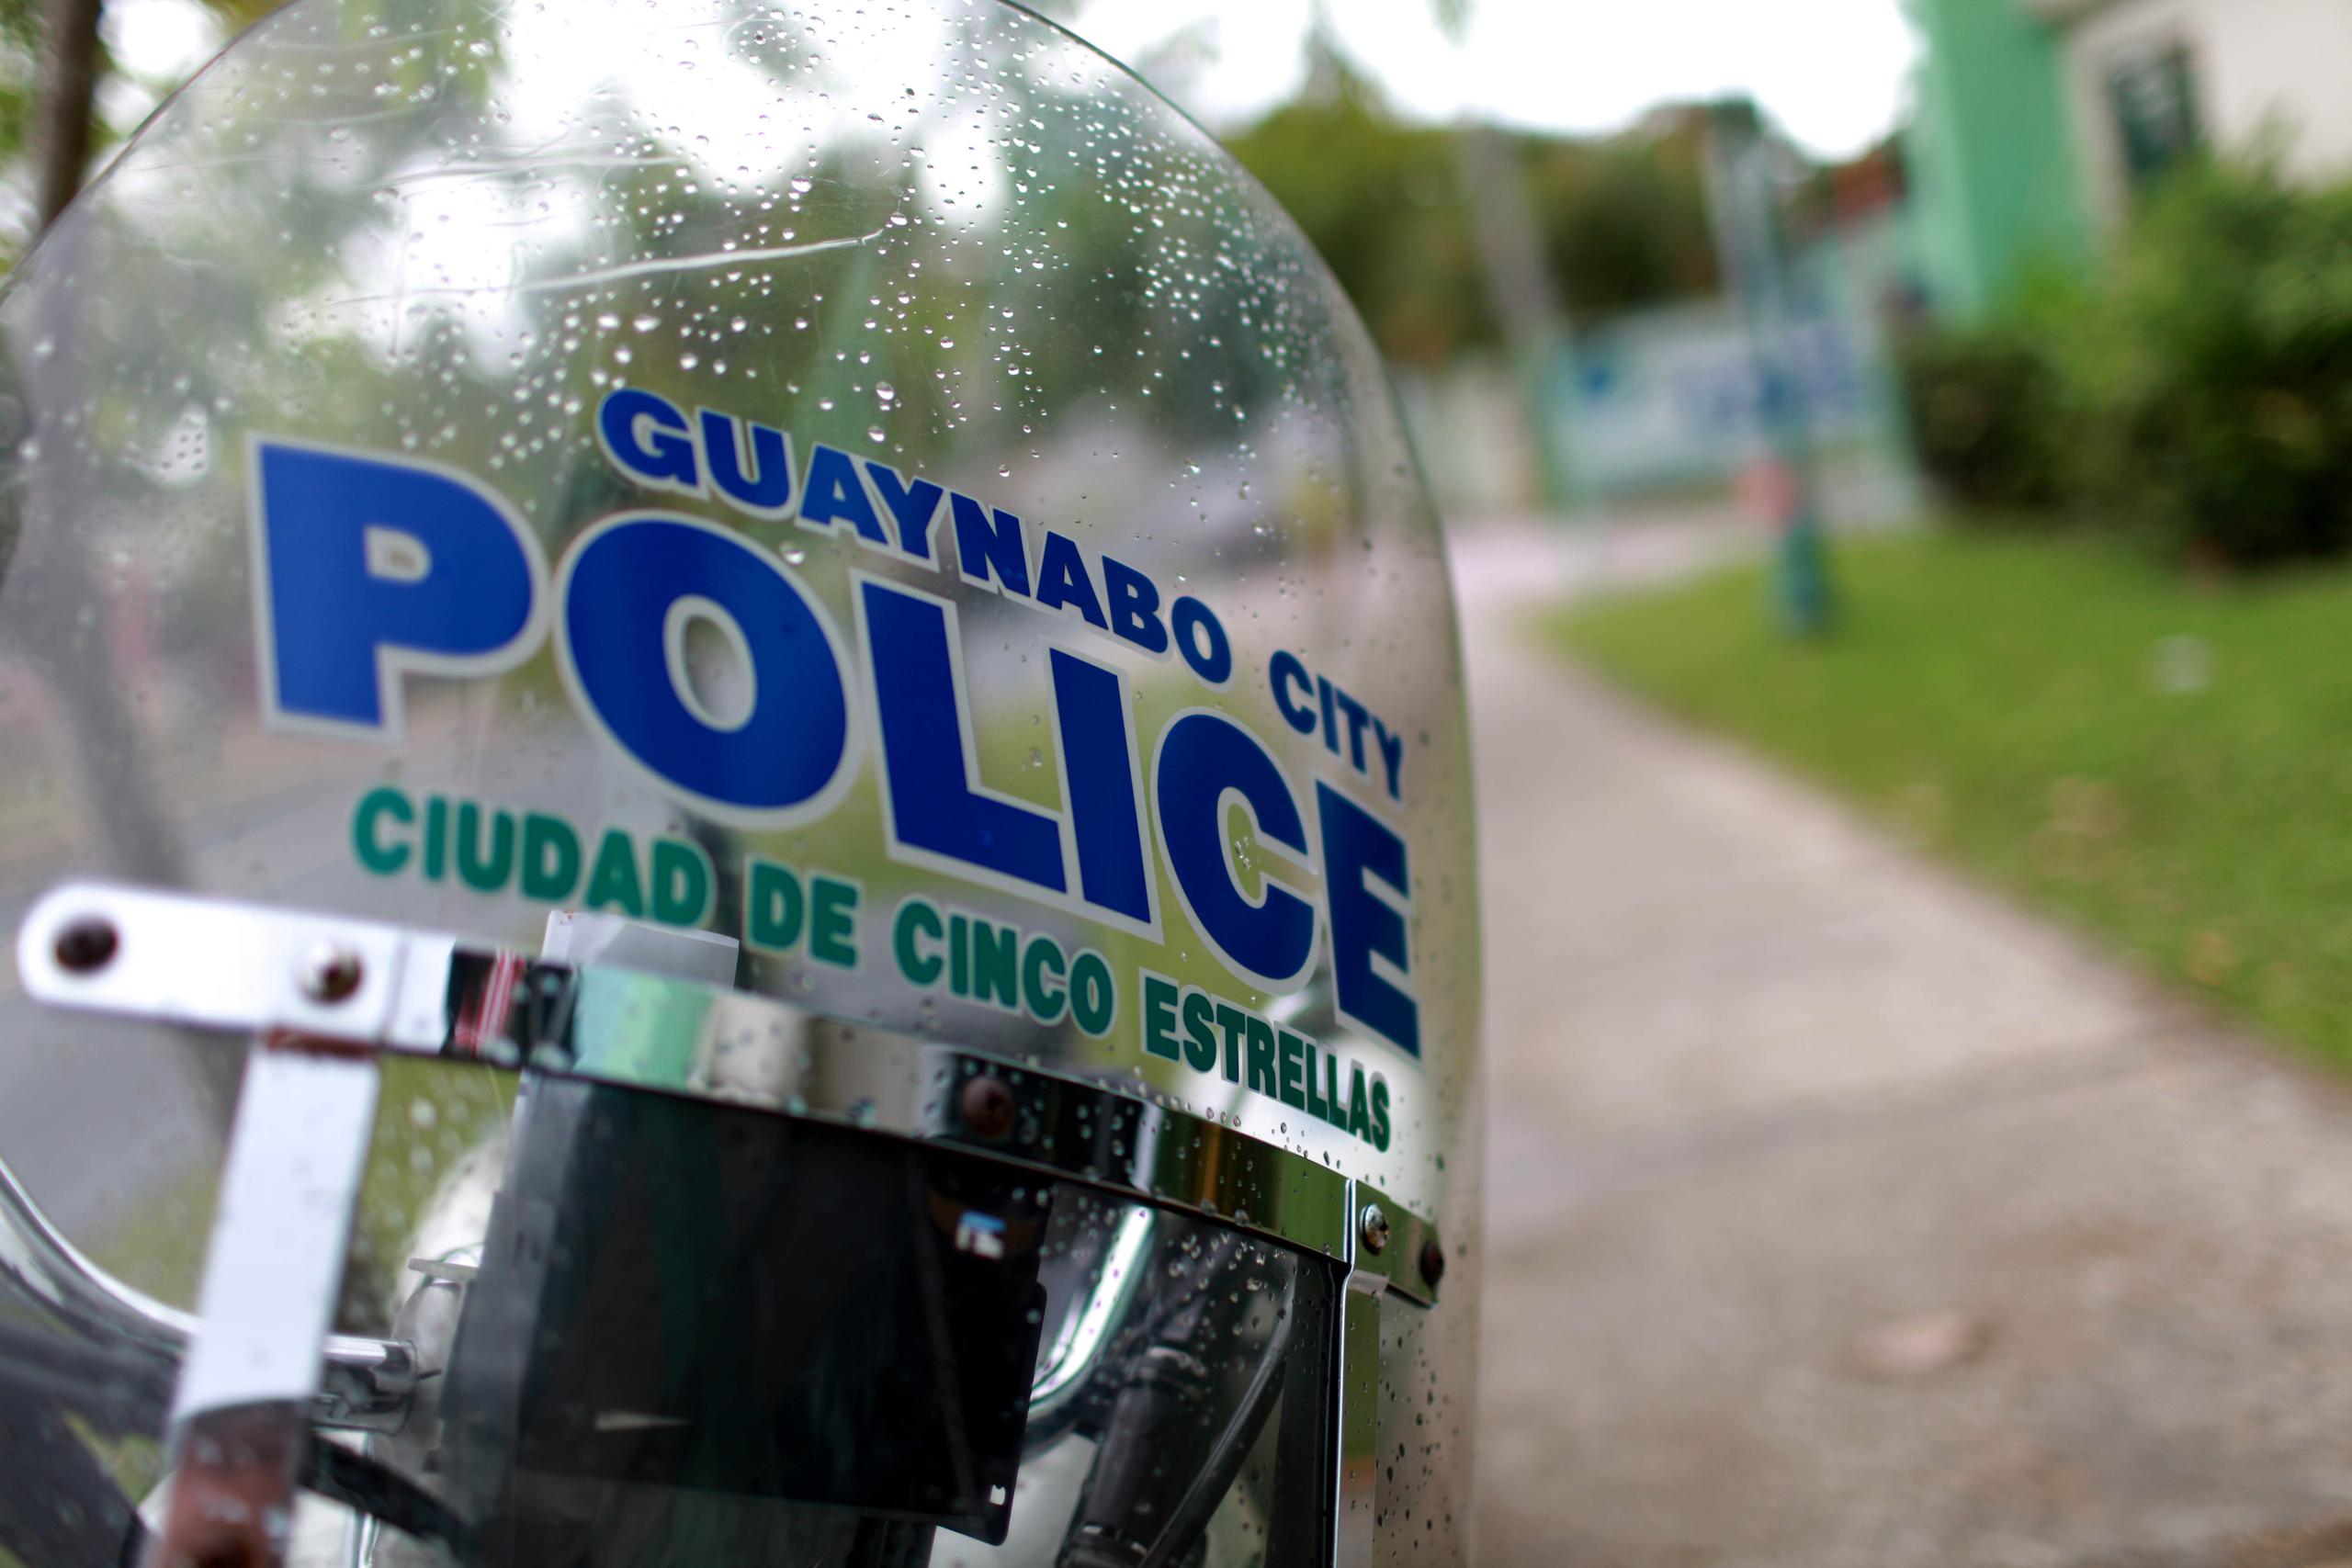 La Policía Municipal de Guaynabo refirió el caso a la División de Delitos contra la Propiedad del CIC.